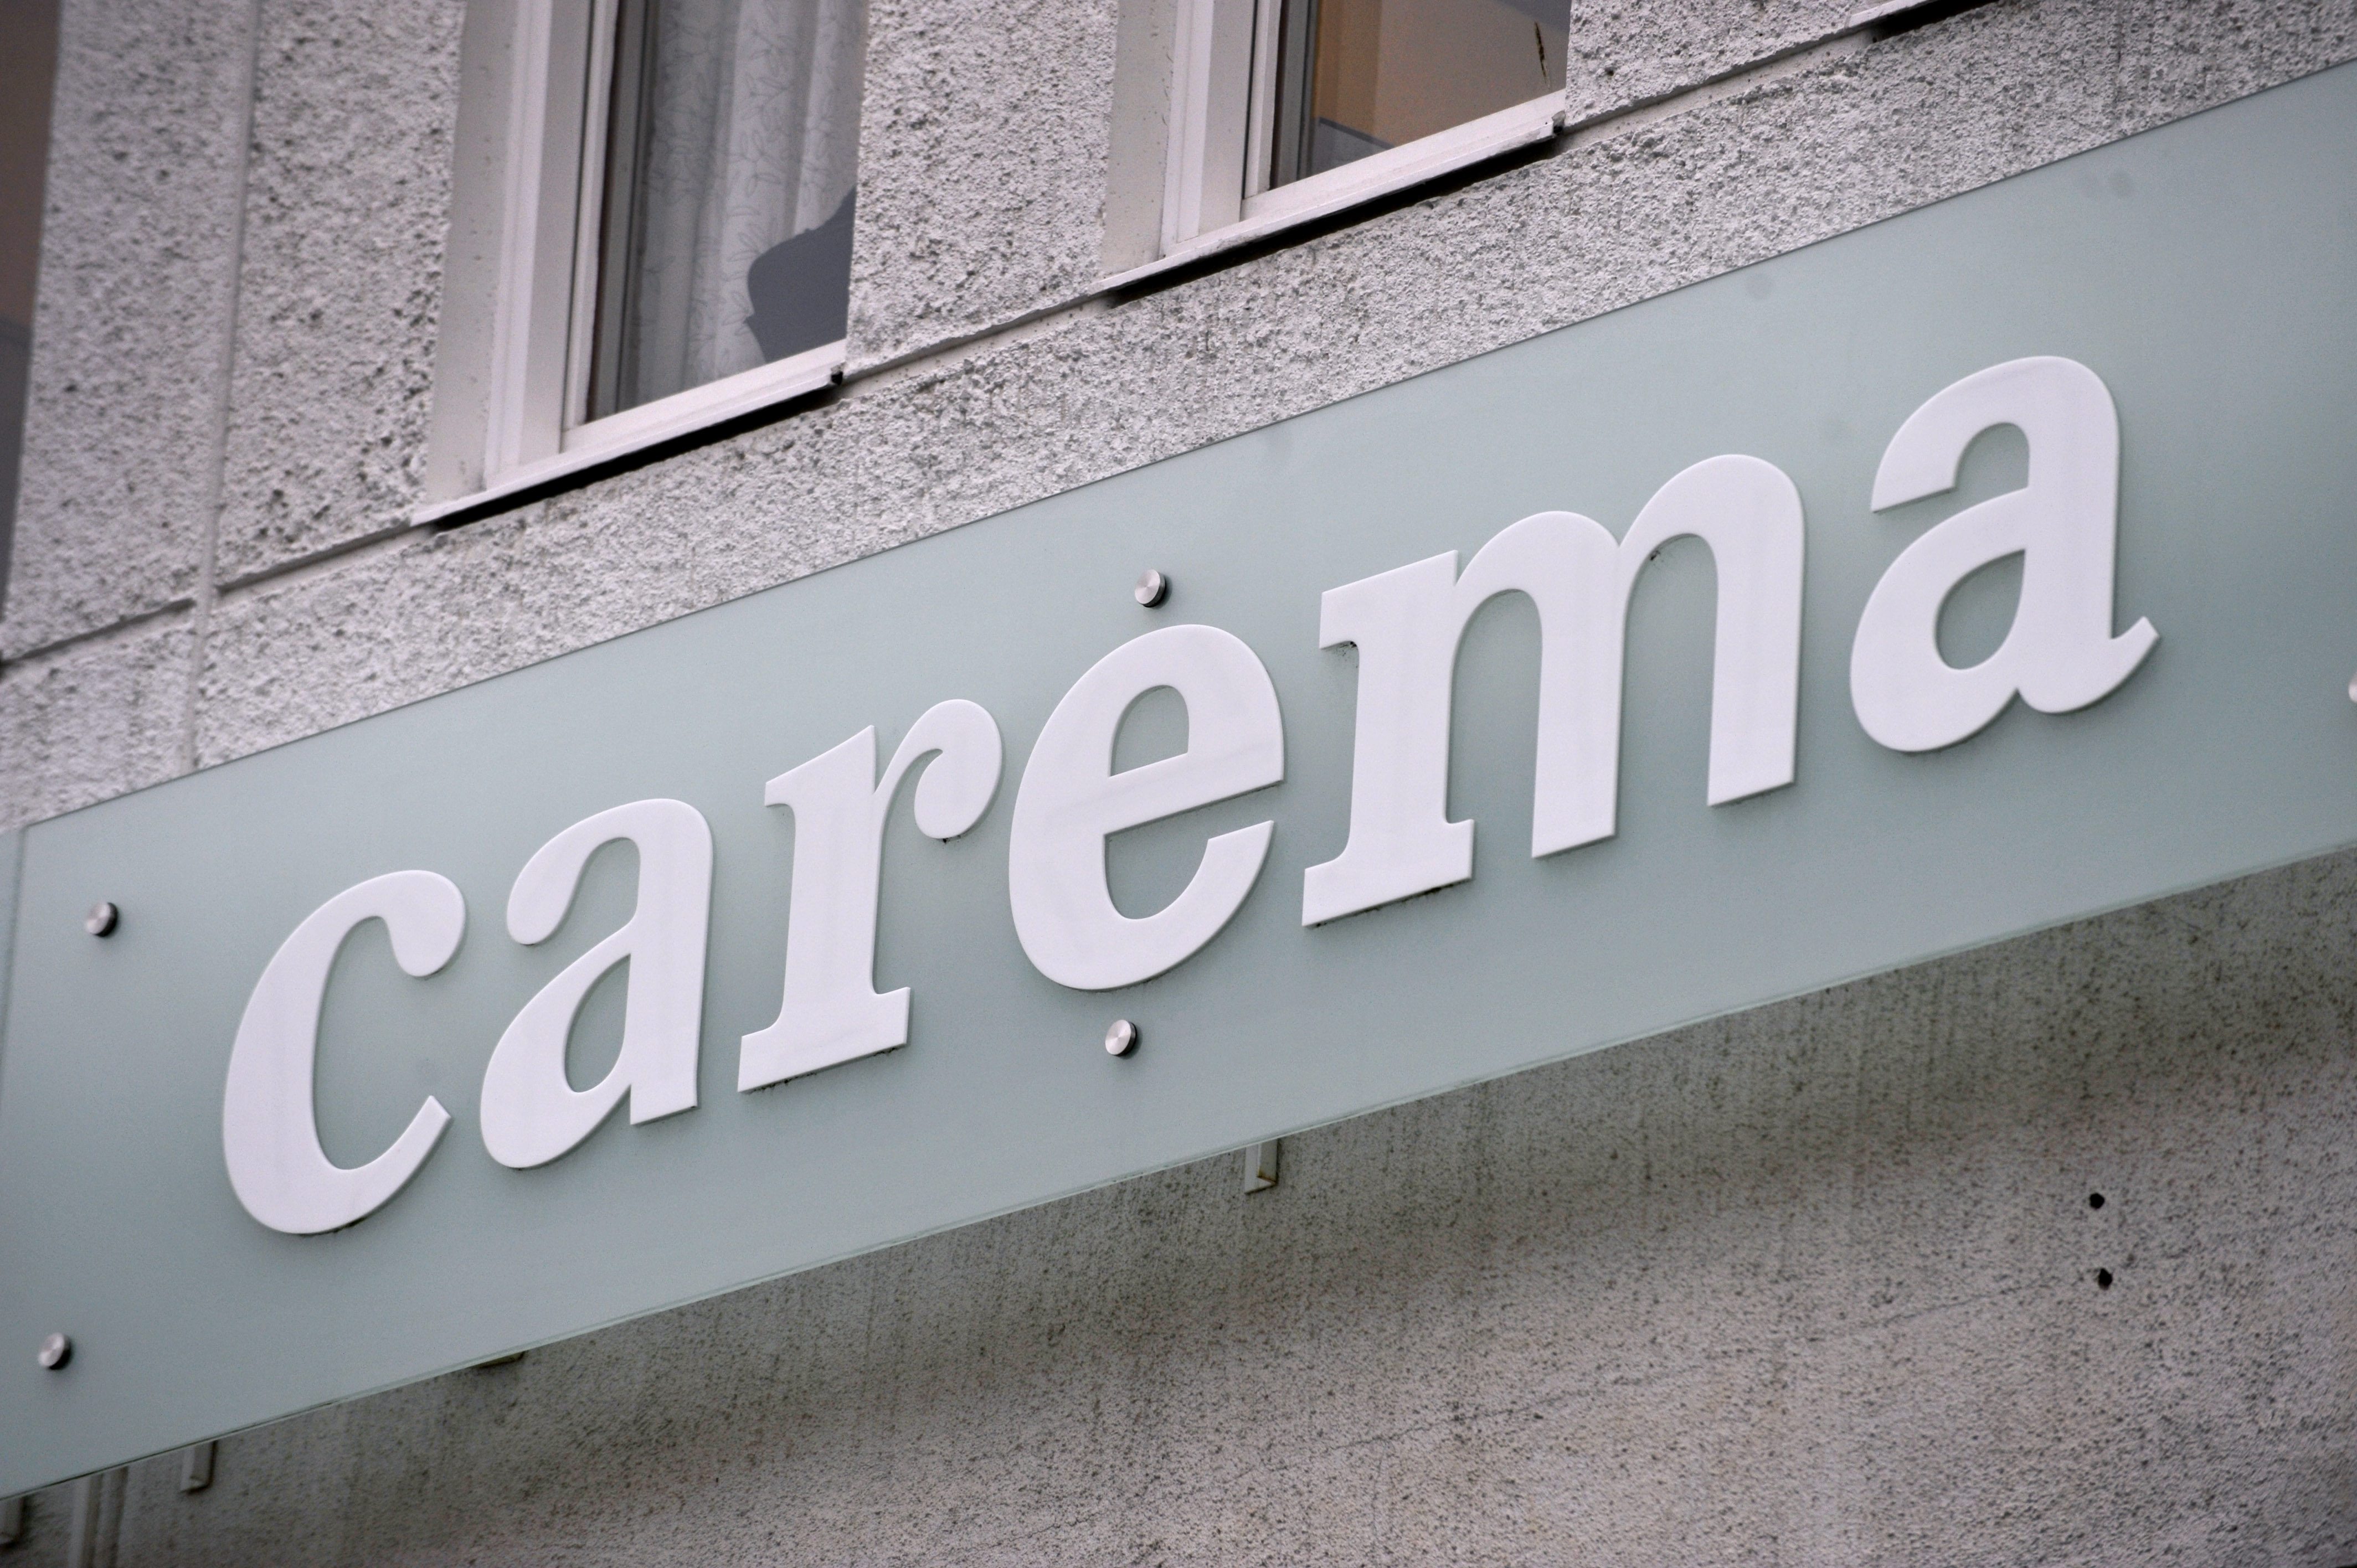 Carema var inblandade i en rad vårdskandaler under hösten och vintern 2011. Skandalerna fortsatte sedan under 2012, samtidigt som Alliansen tappat väljare.